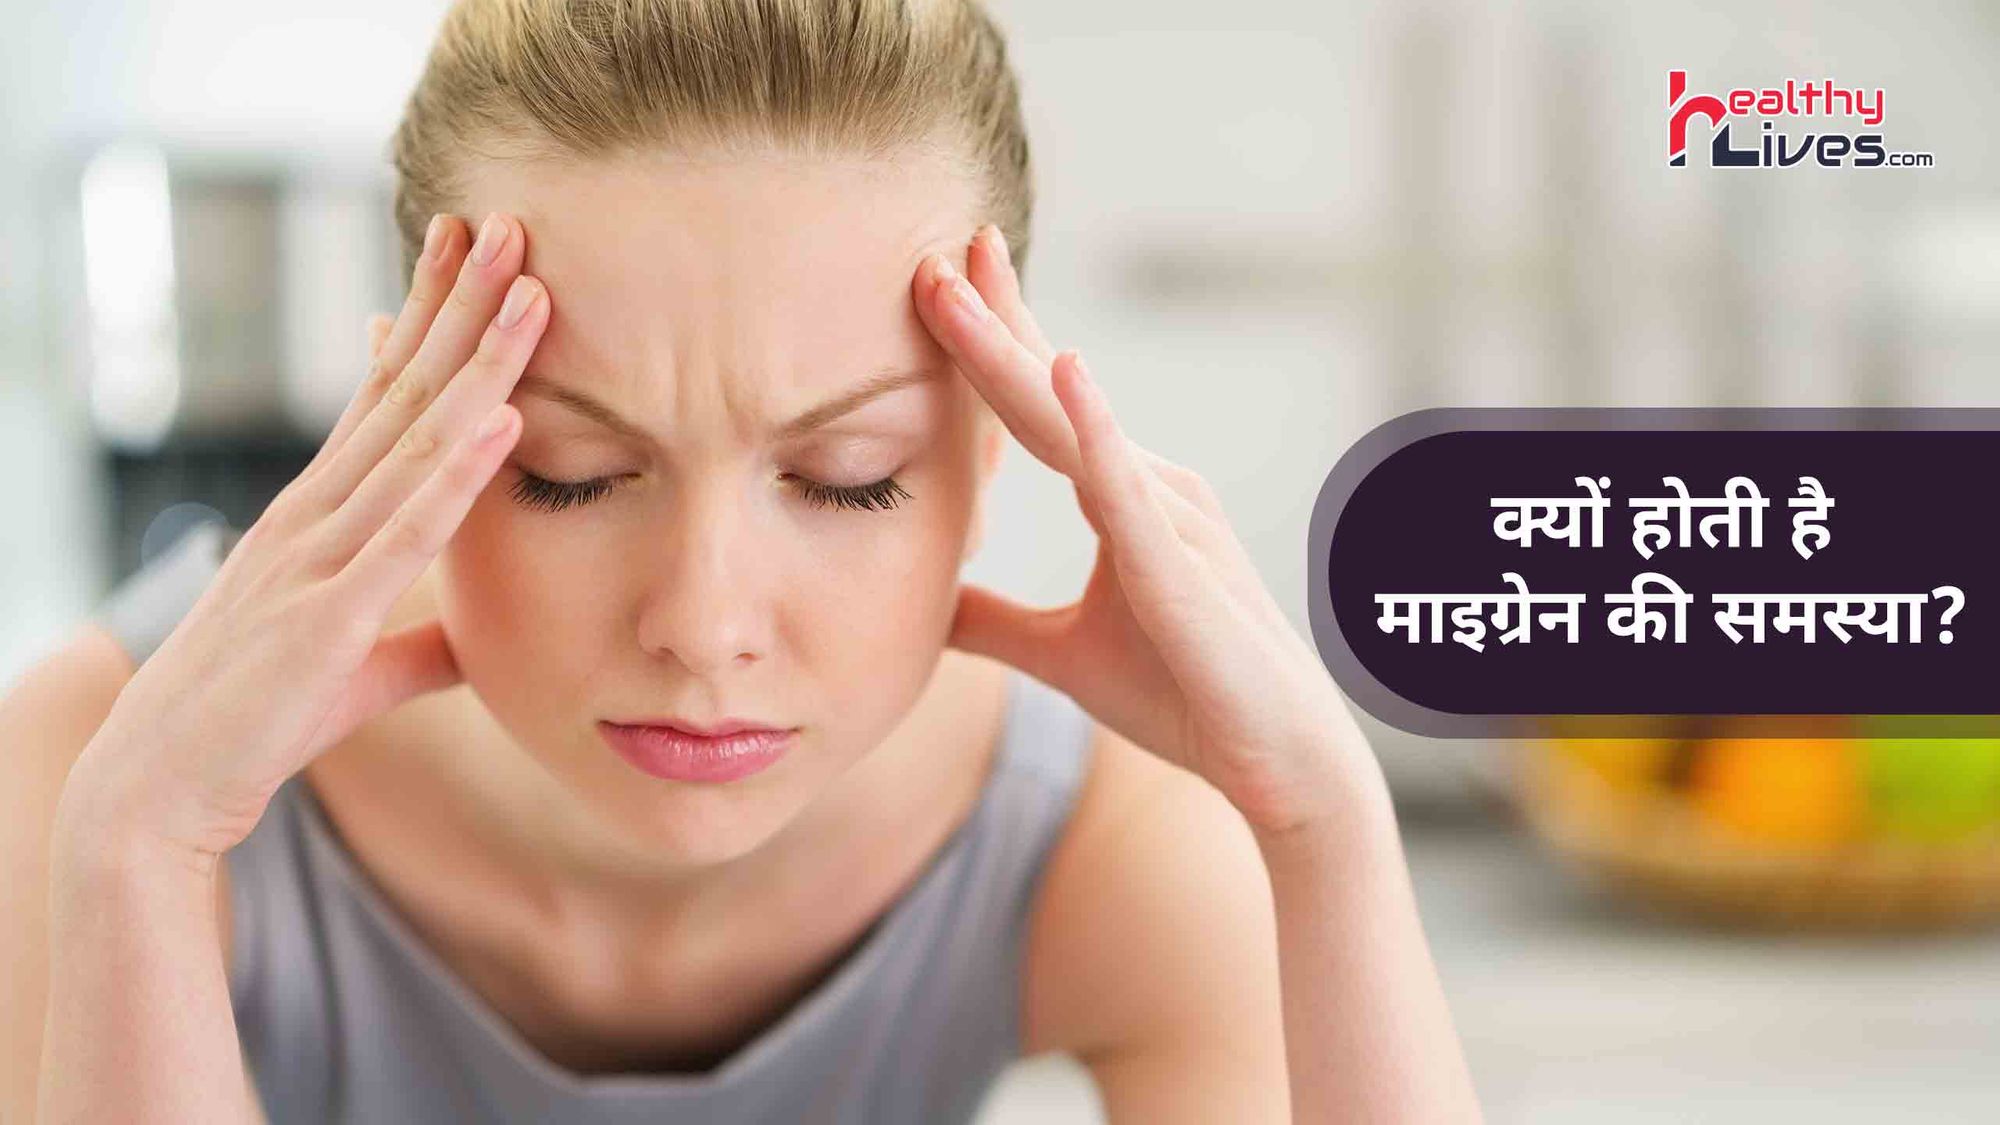 What Causes Migraines: सिर में तेज दर्द बन सकता है माइग्रेन का कारण